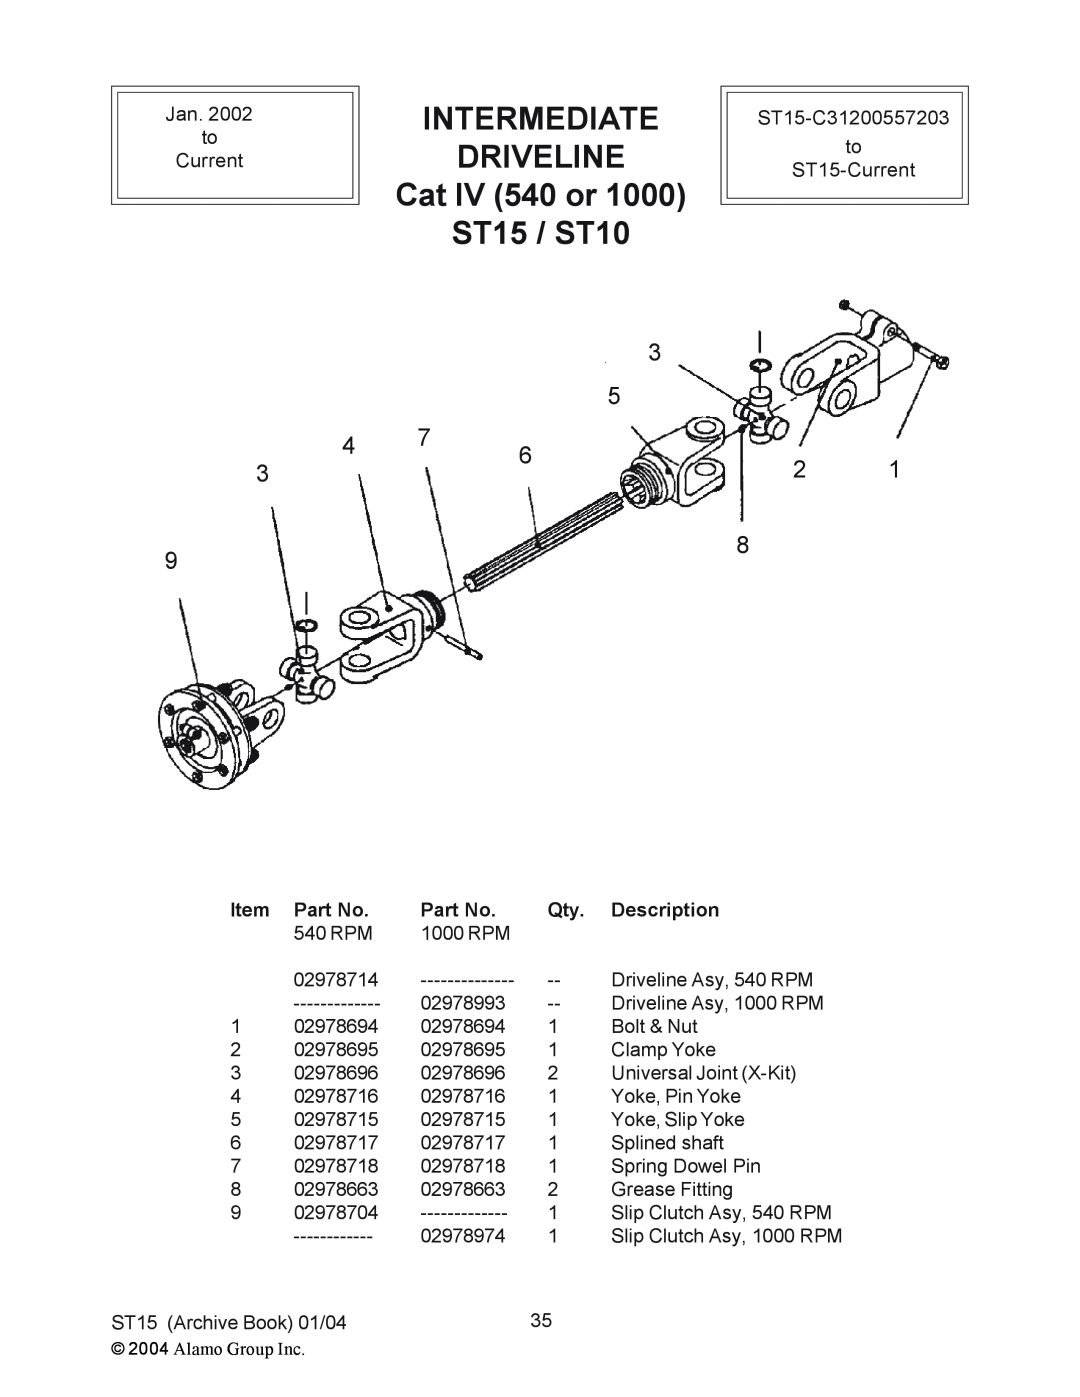 Alamo manual INTERMEDIATE DRIVELINE Cat IV 540 or ST15 / ST10, Description 